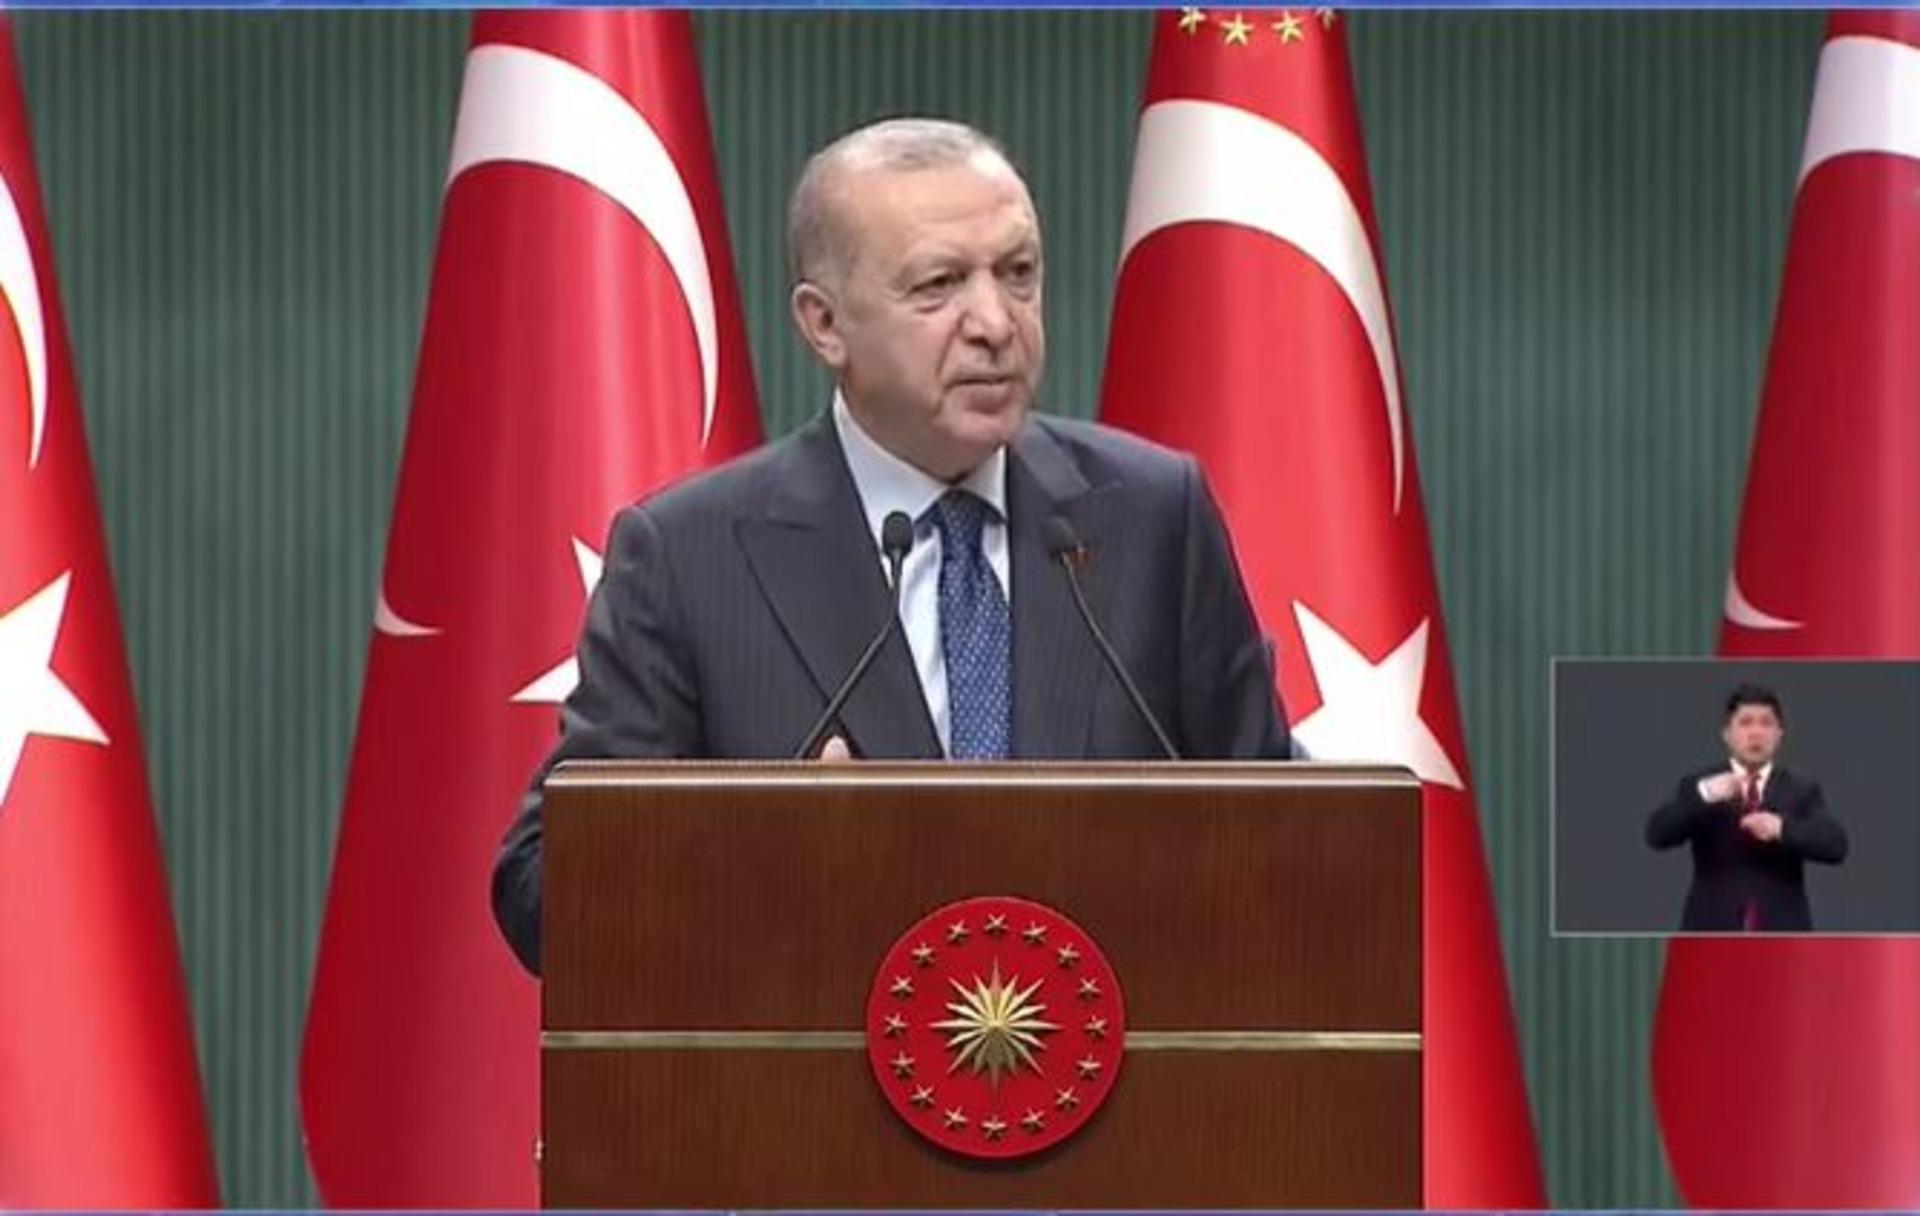 Son Dakika: Kabine toplantısı sonrası Cumhurbaşkanı Erdoğan'dan flaş açıklamalar